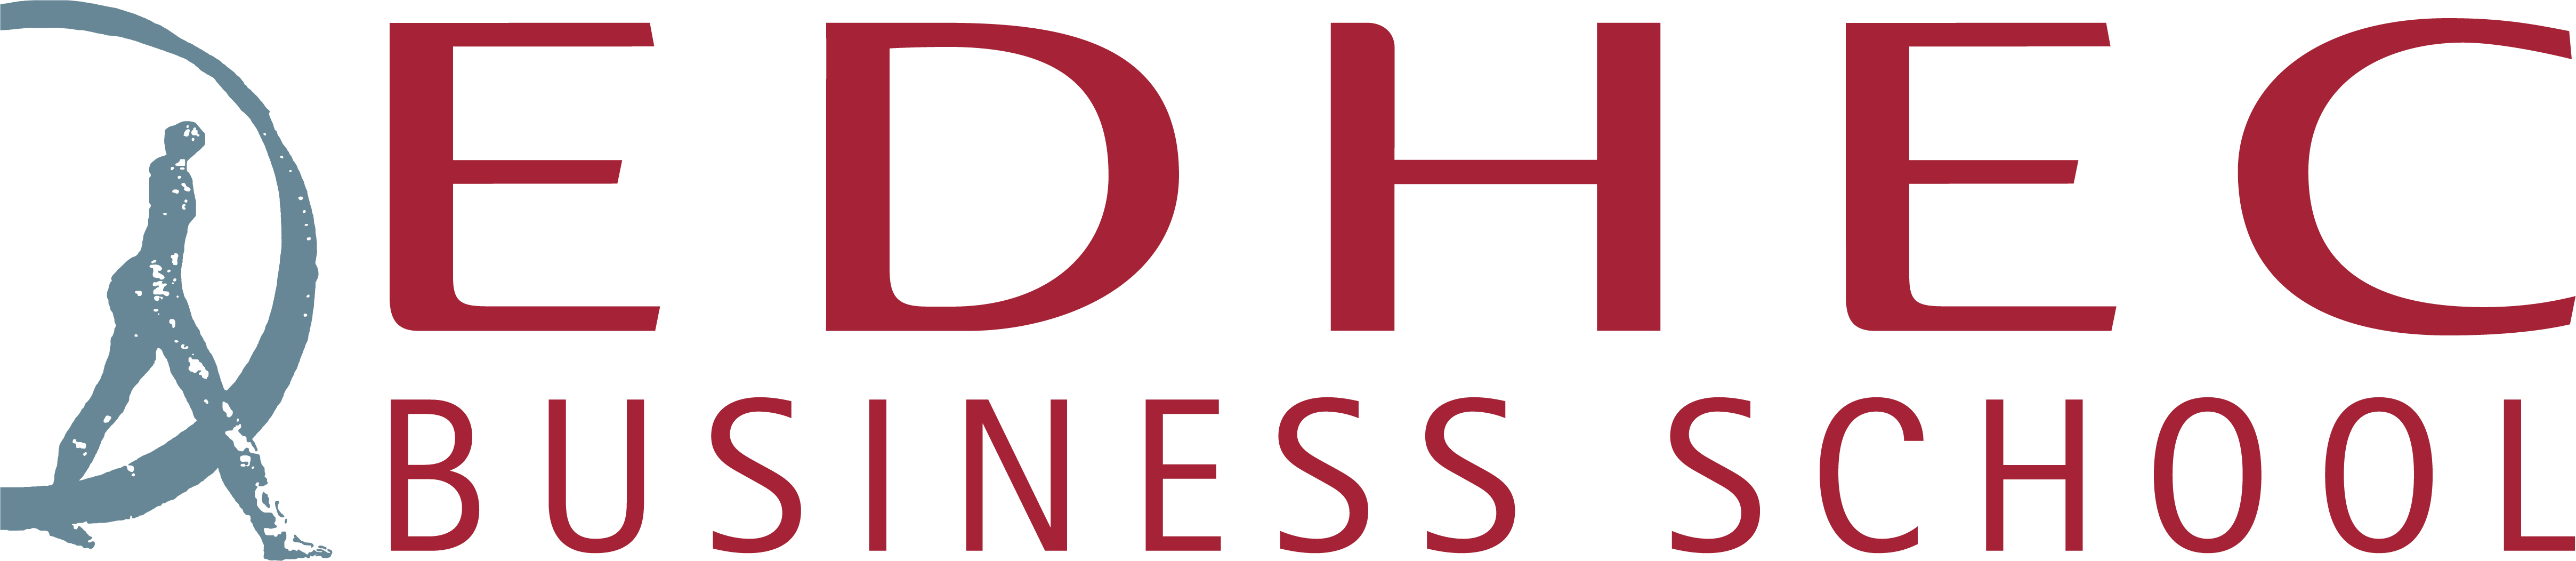 logo Prefcture HDF